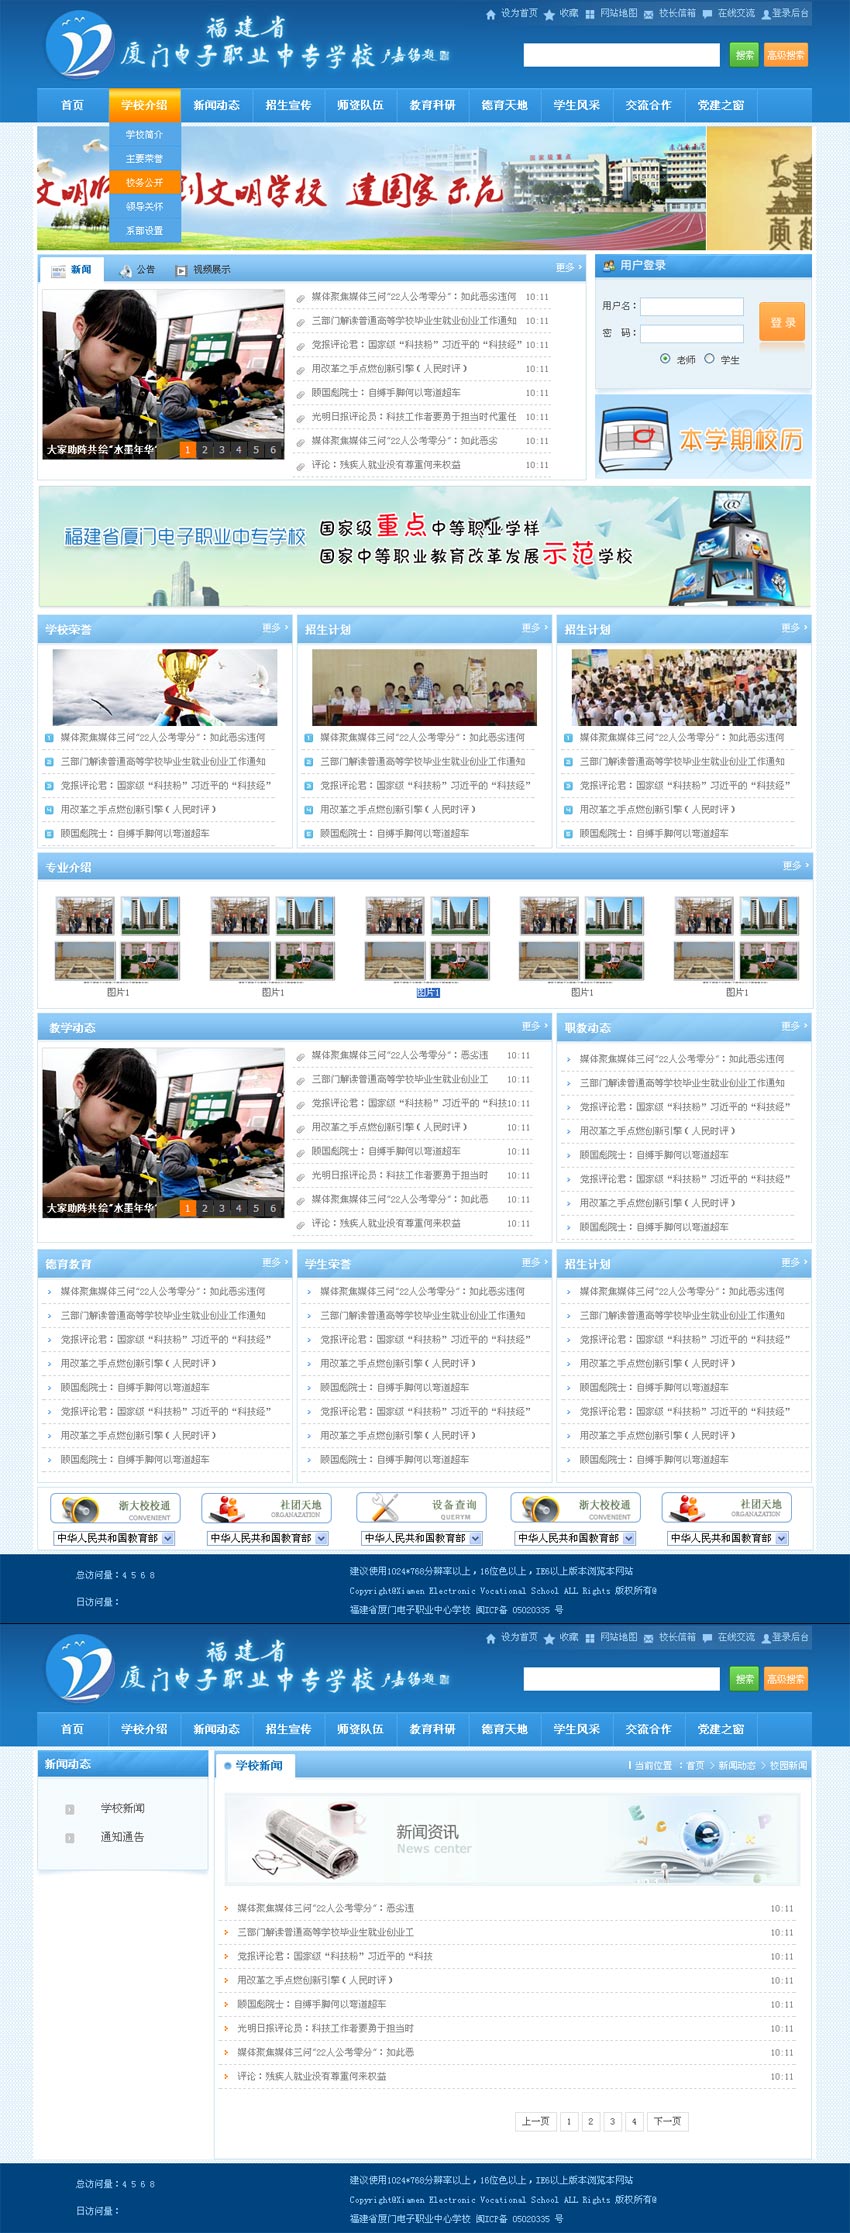 蓝色的学校网页设计模板html_大学学校网站模板下载_企业网站模板插图源码资源库